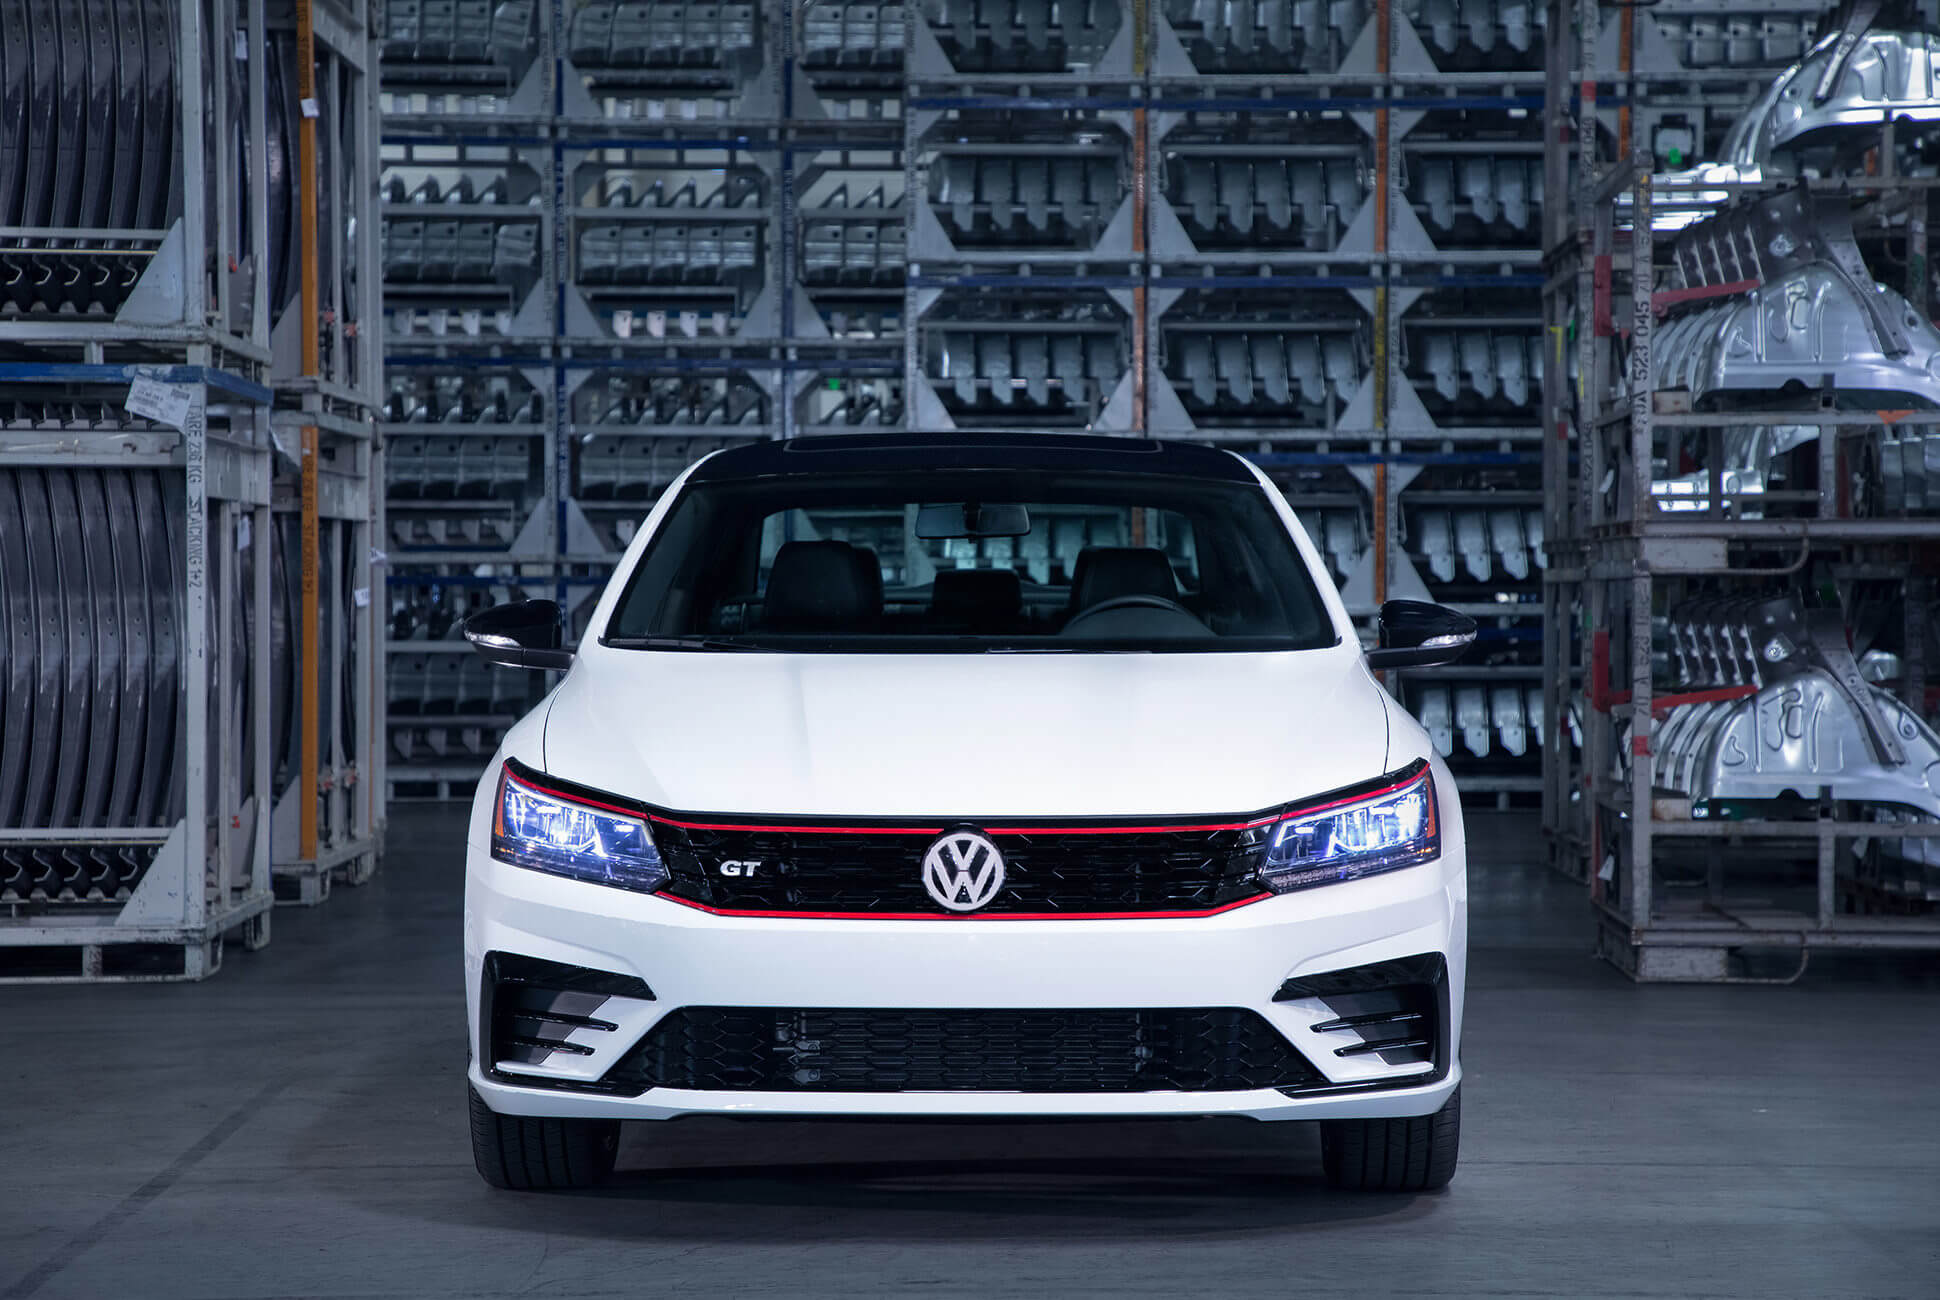 Volkswagen Northmead Serv Auto Care Service